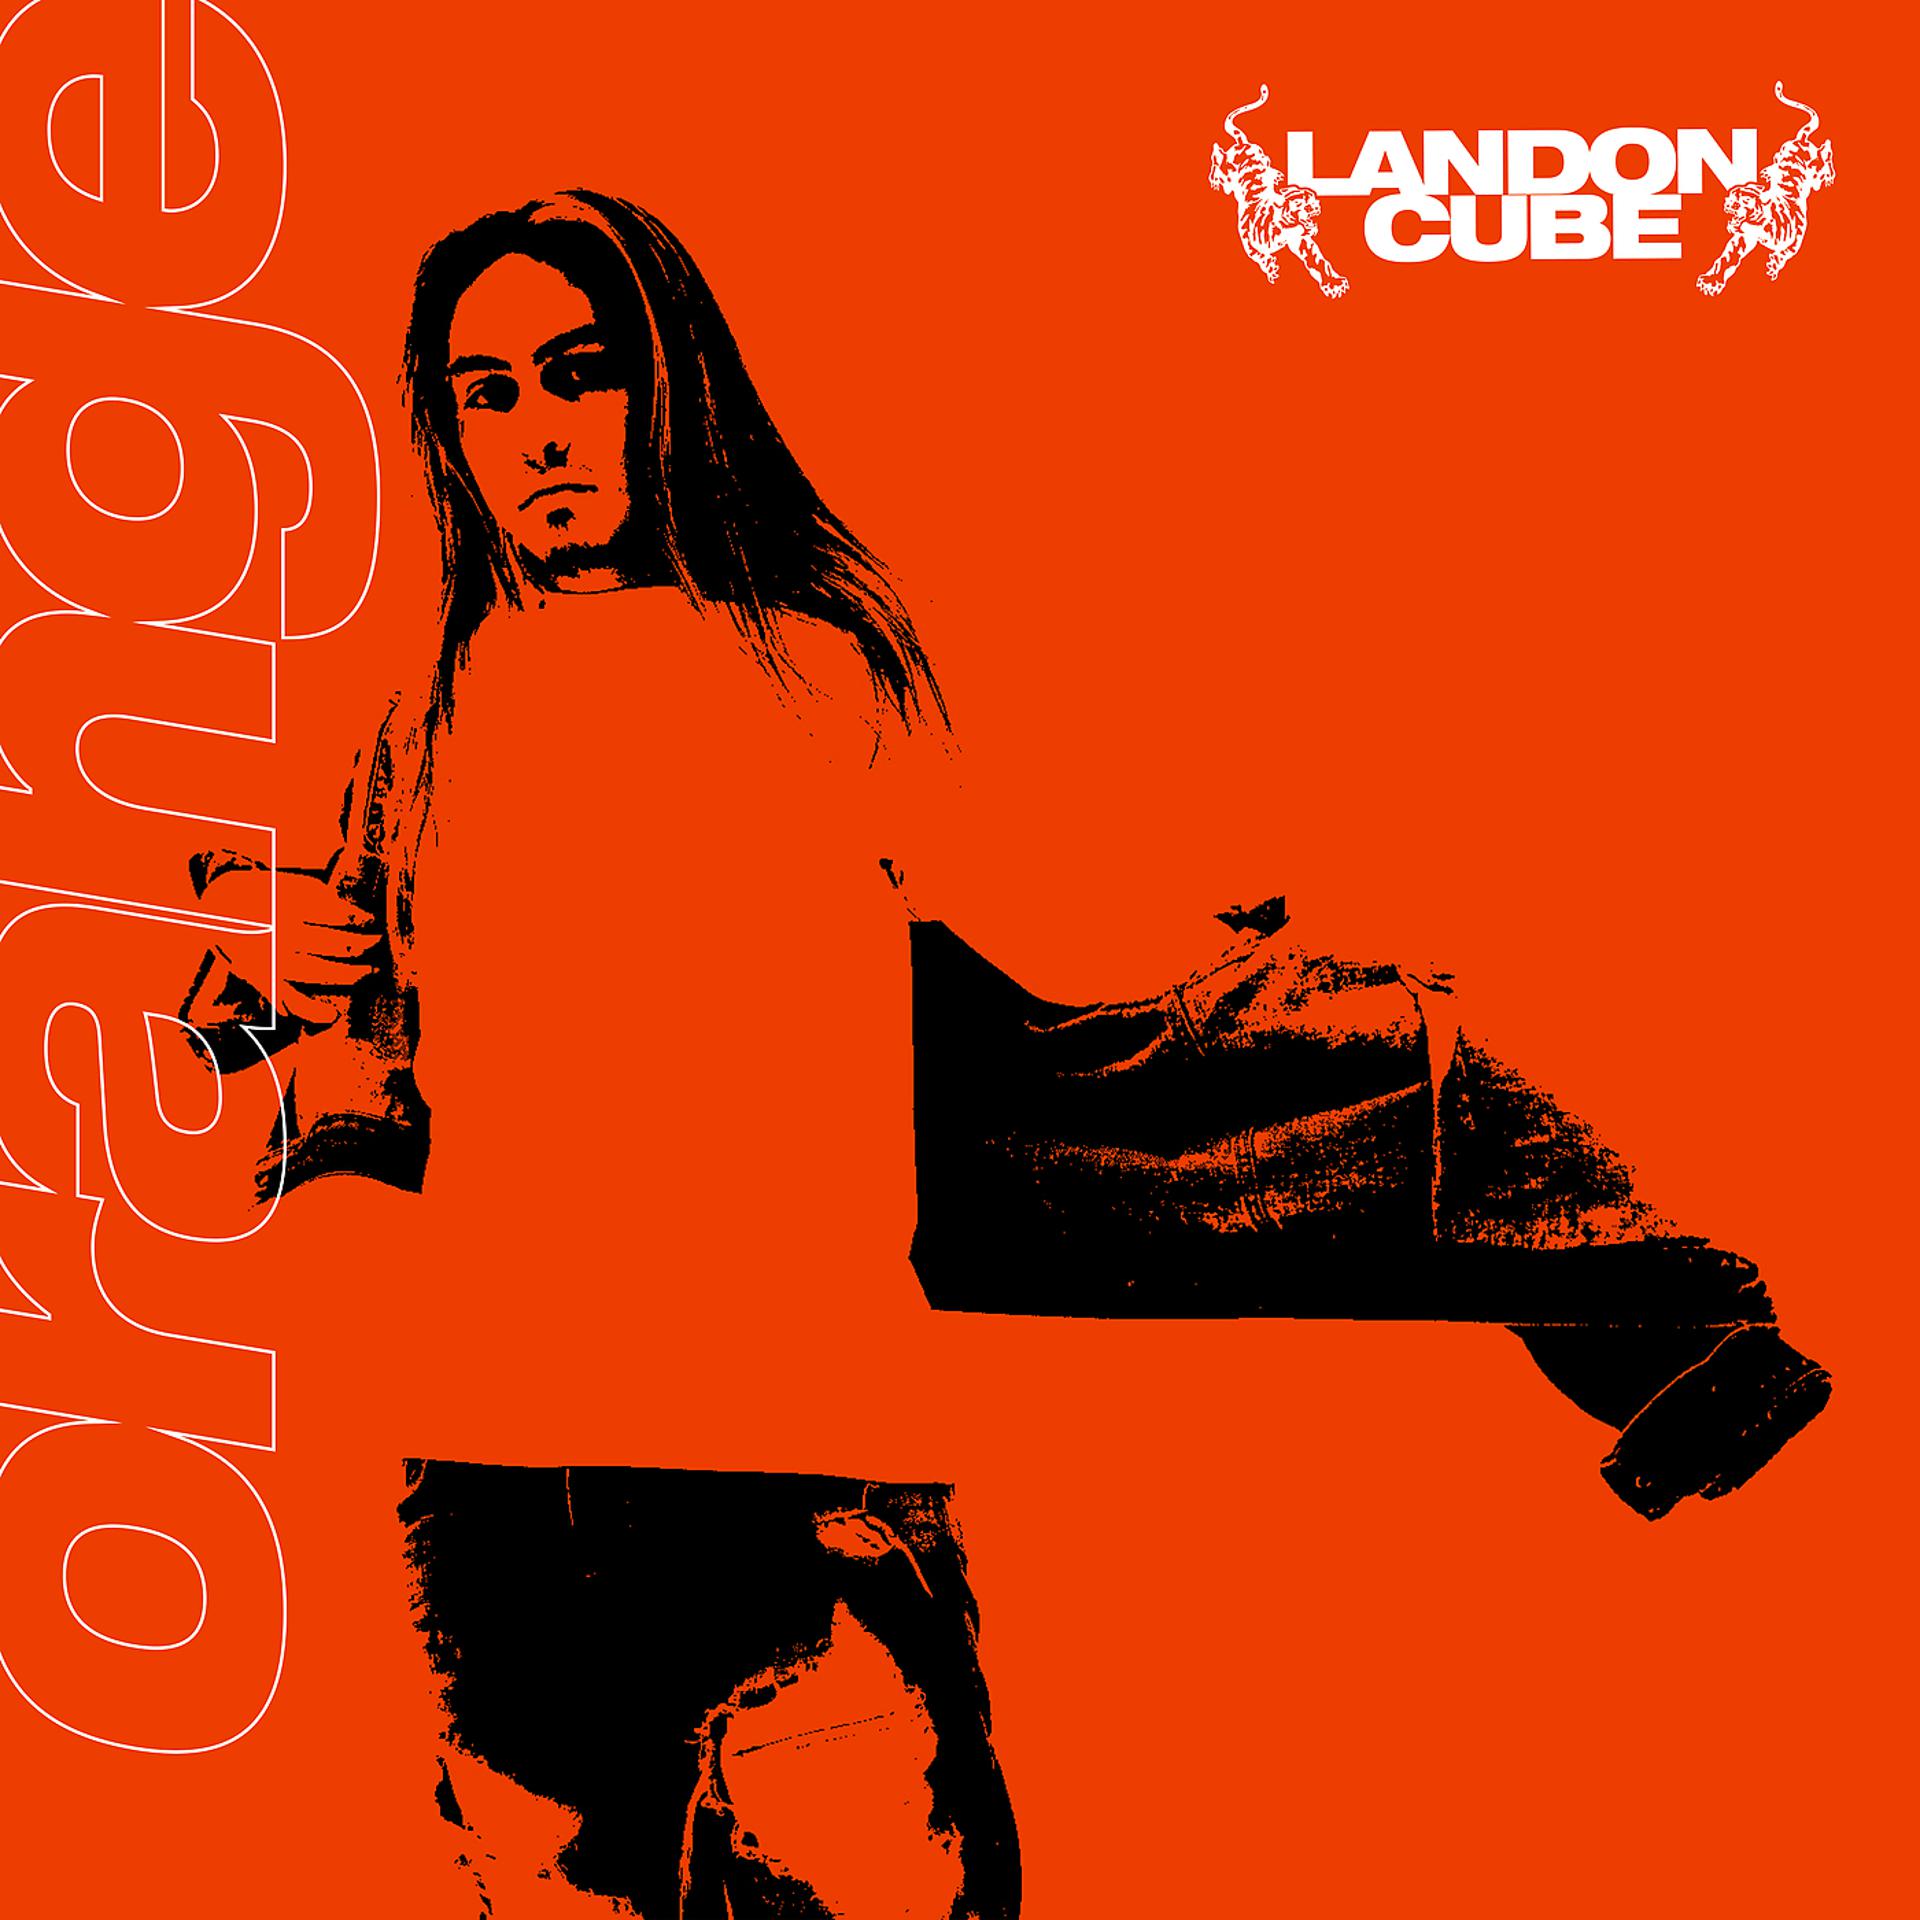 Cube feat. Лэндон Кьюб. Электронная музыка альбом оранжевая обложка. Альбом Orange какого исполнителя. Музыка куб на обложке.